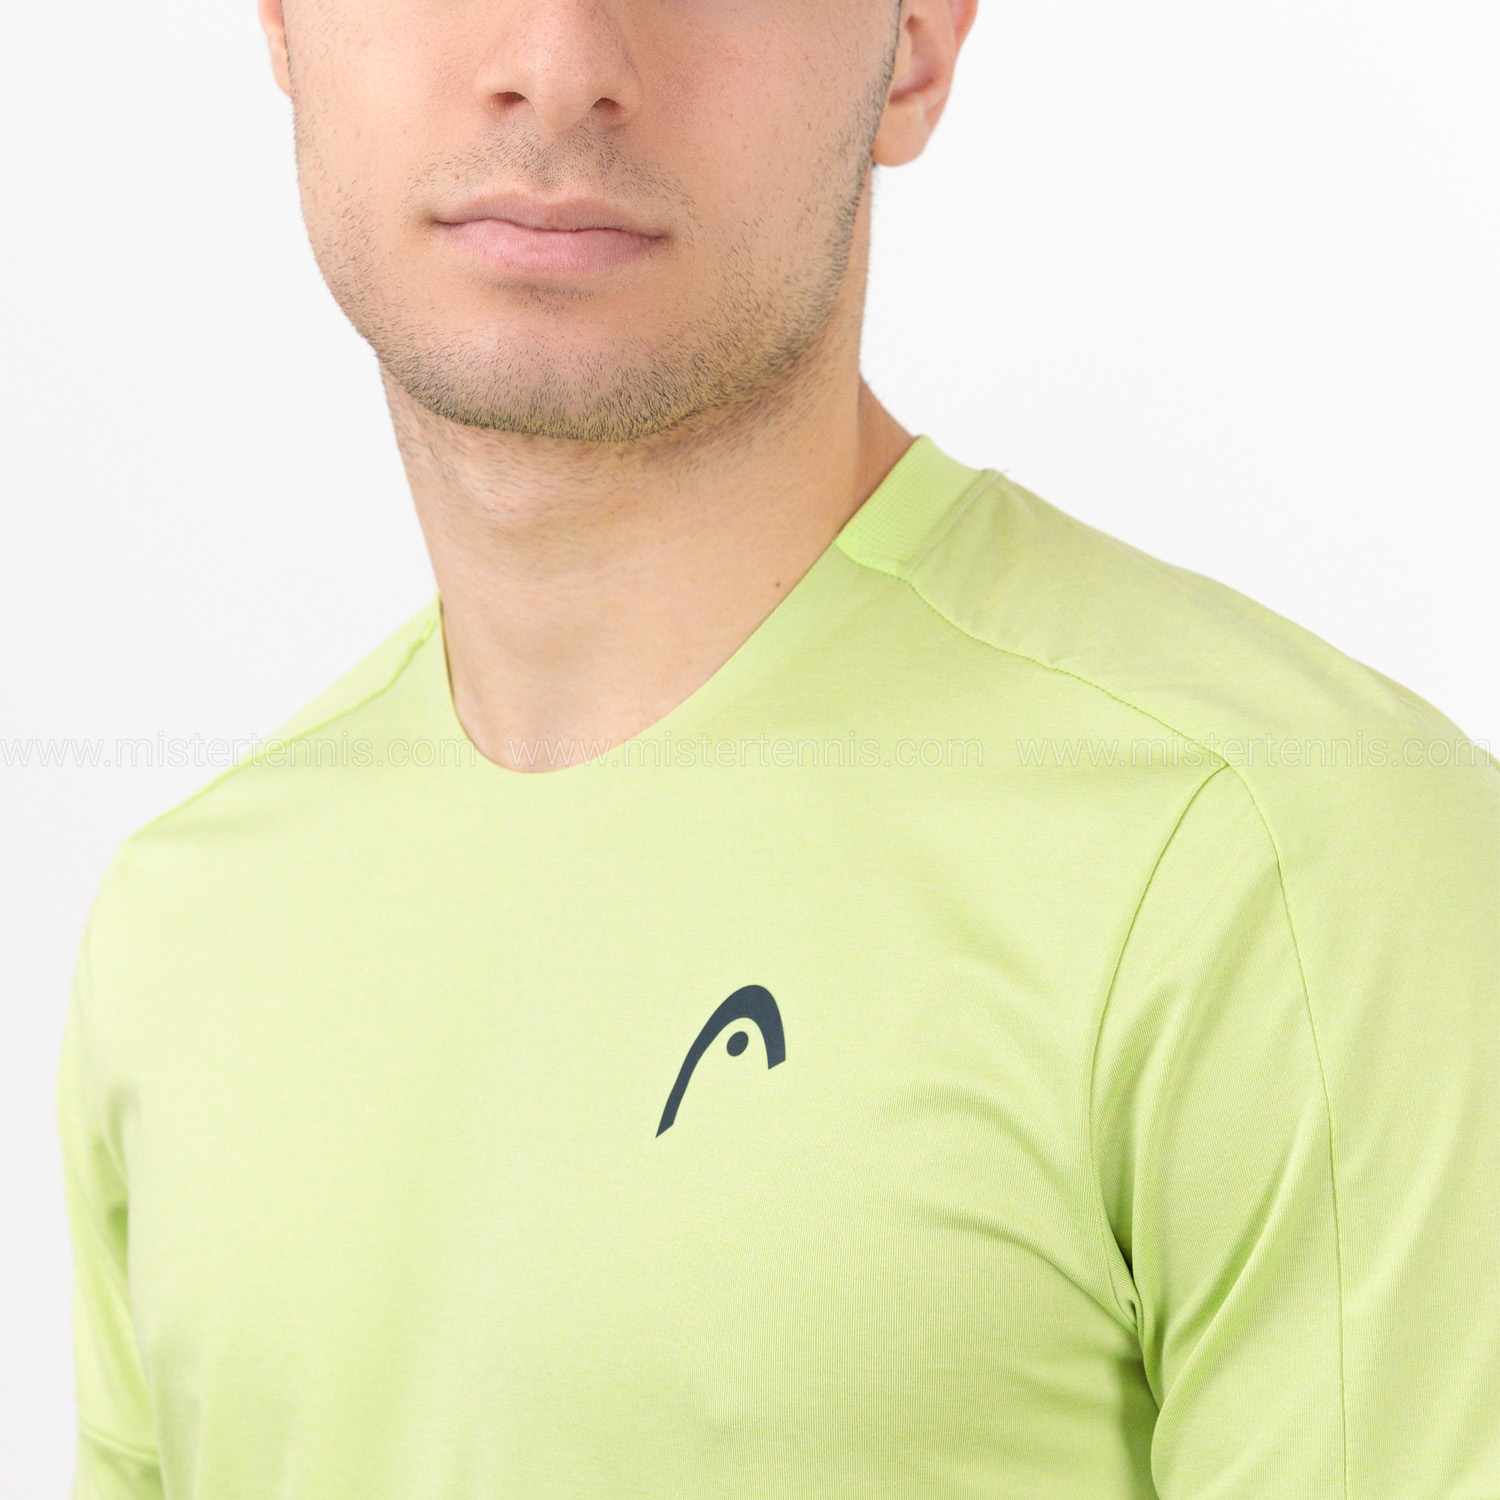 Head Play Tech Logo Camiseta de Padel Hombre - Grey/Light Green